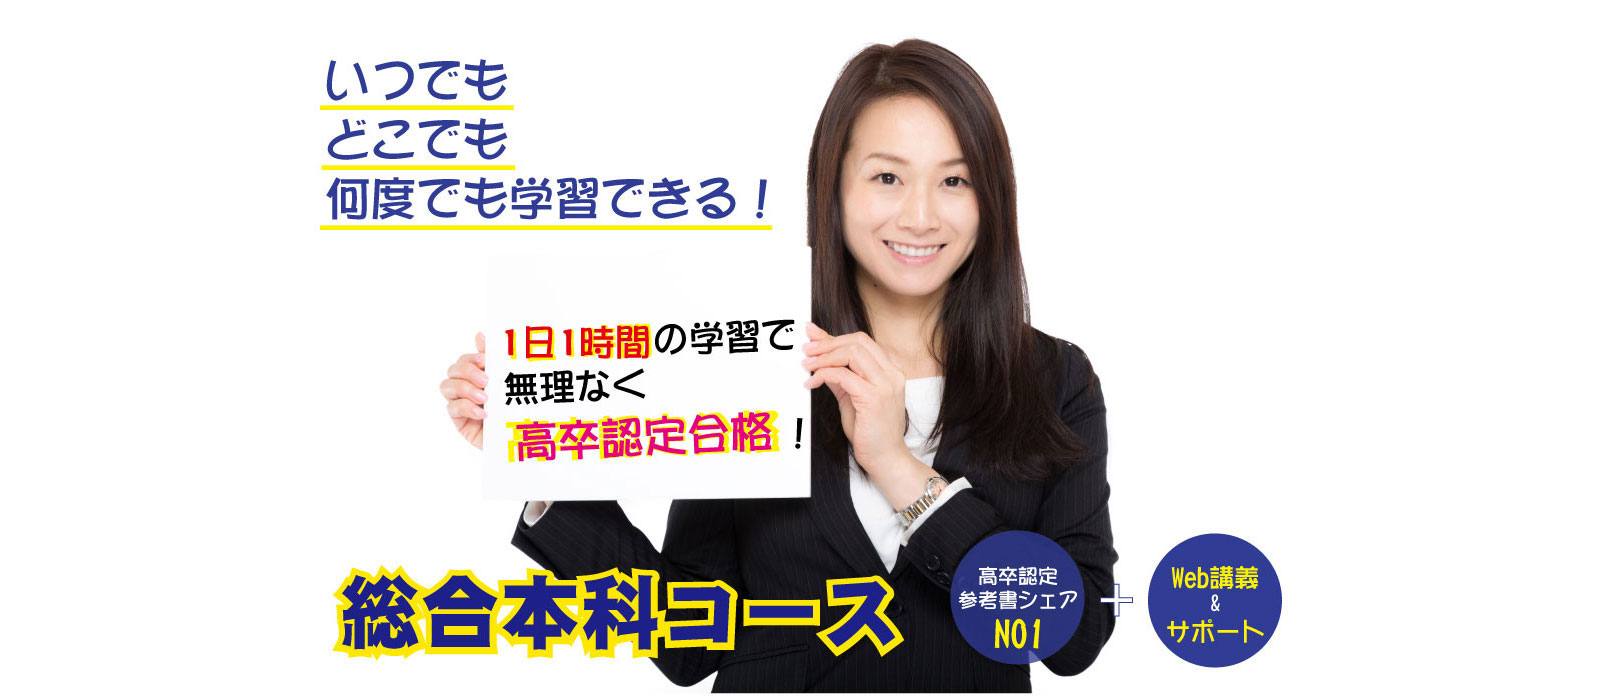 高卒認定試験はJ-Web Schoolの総合本科コース!!